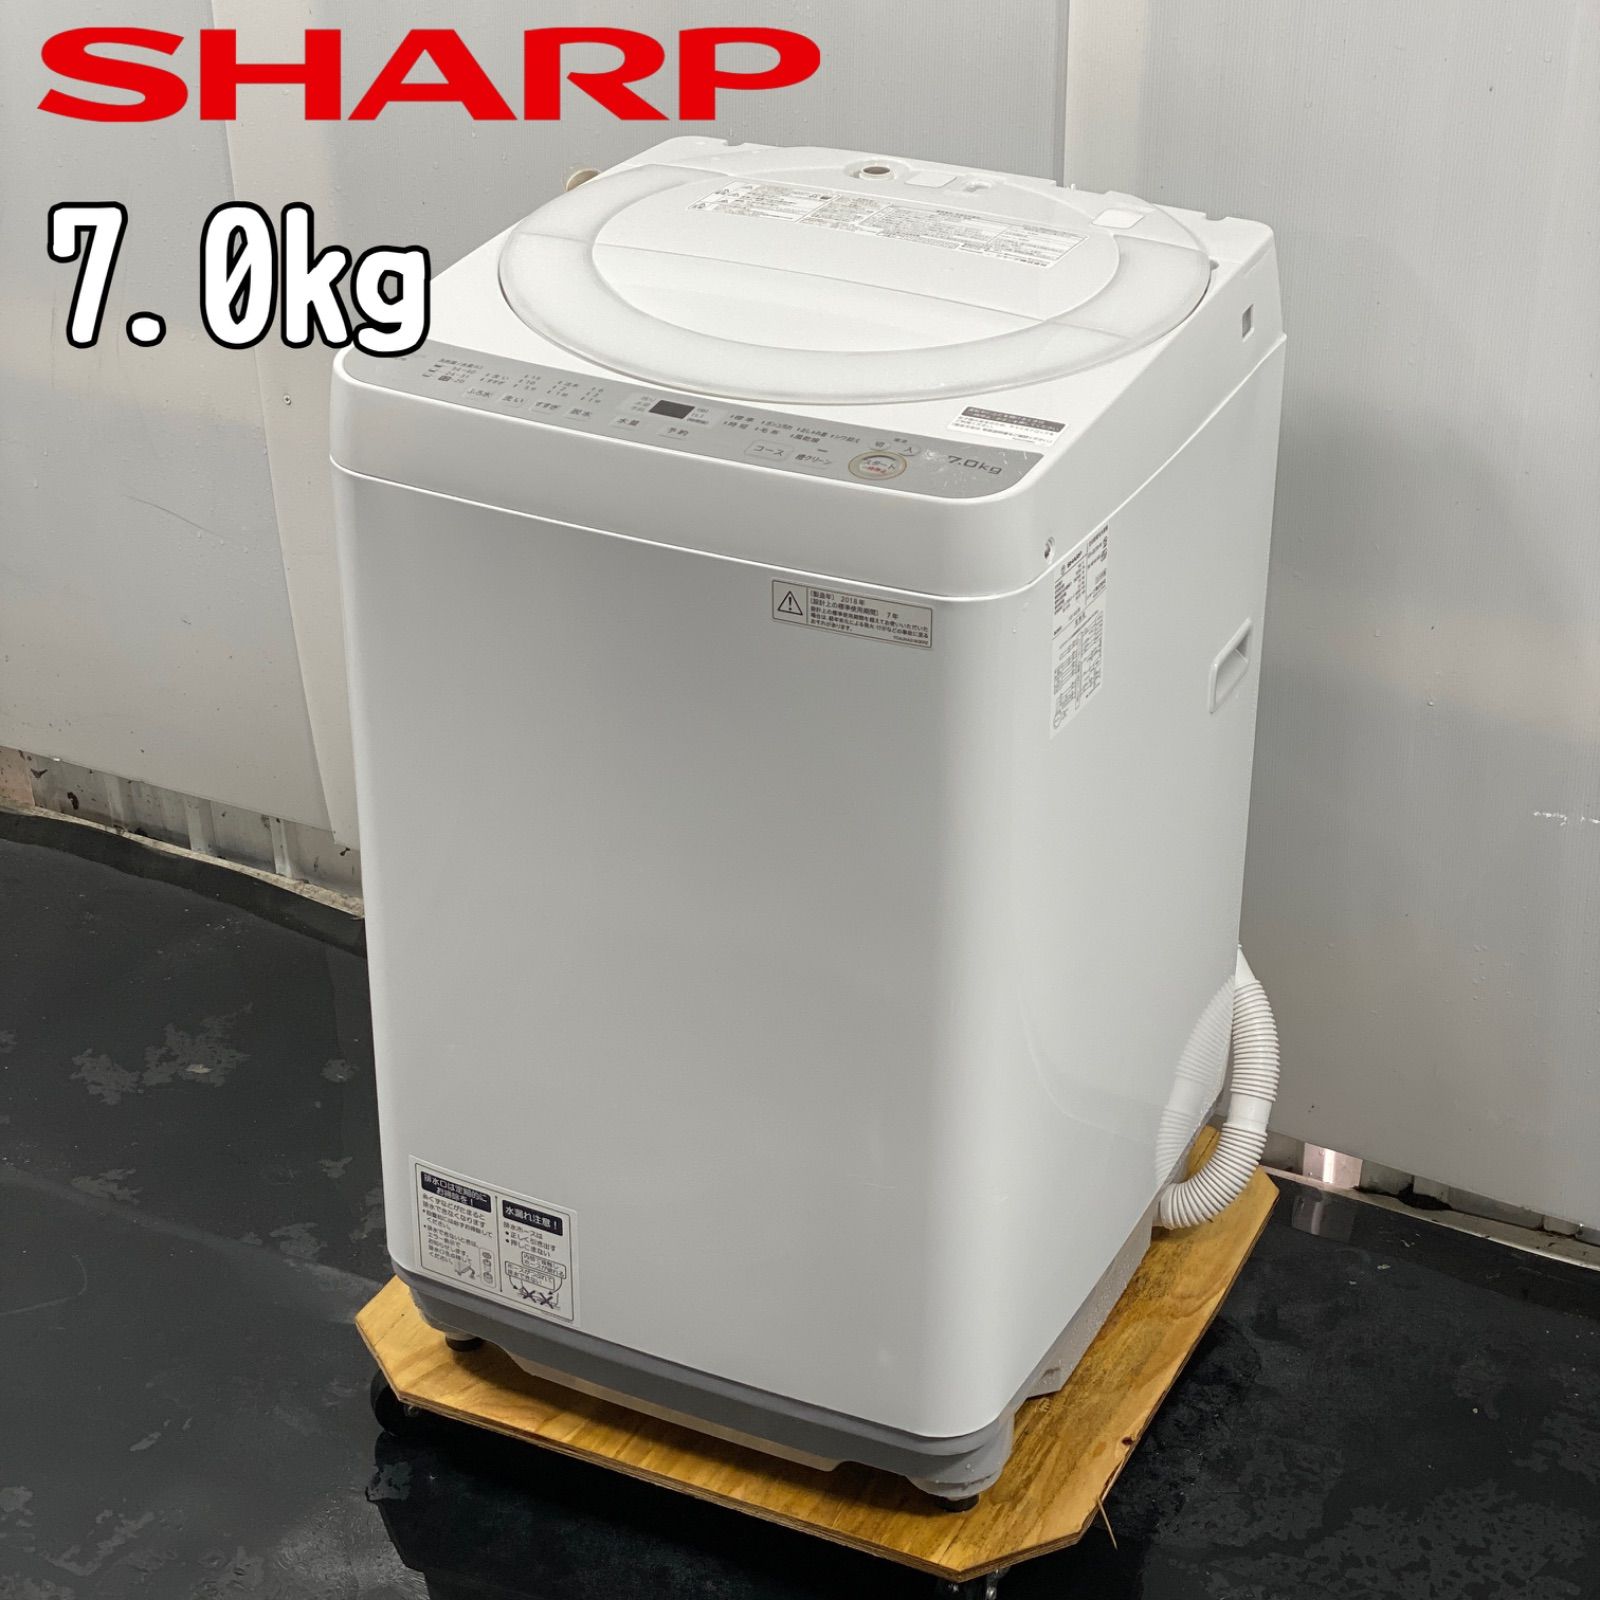 全自動洗濯機 9キロ 大容量 2018年製 シャープ - 生活家電